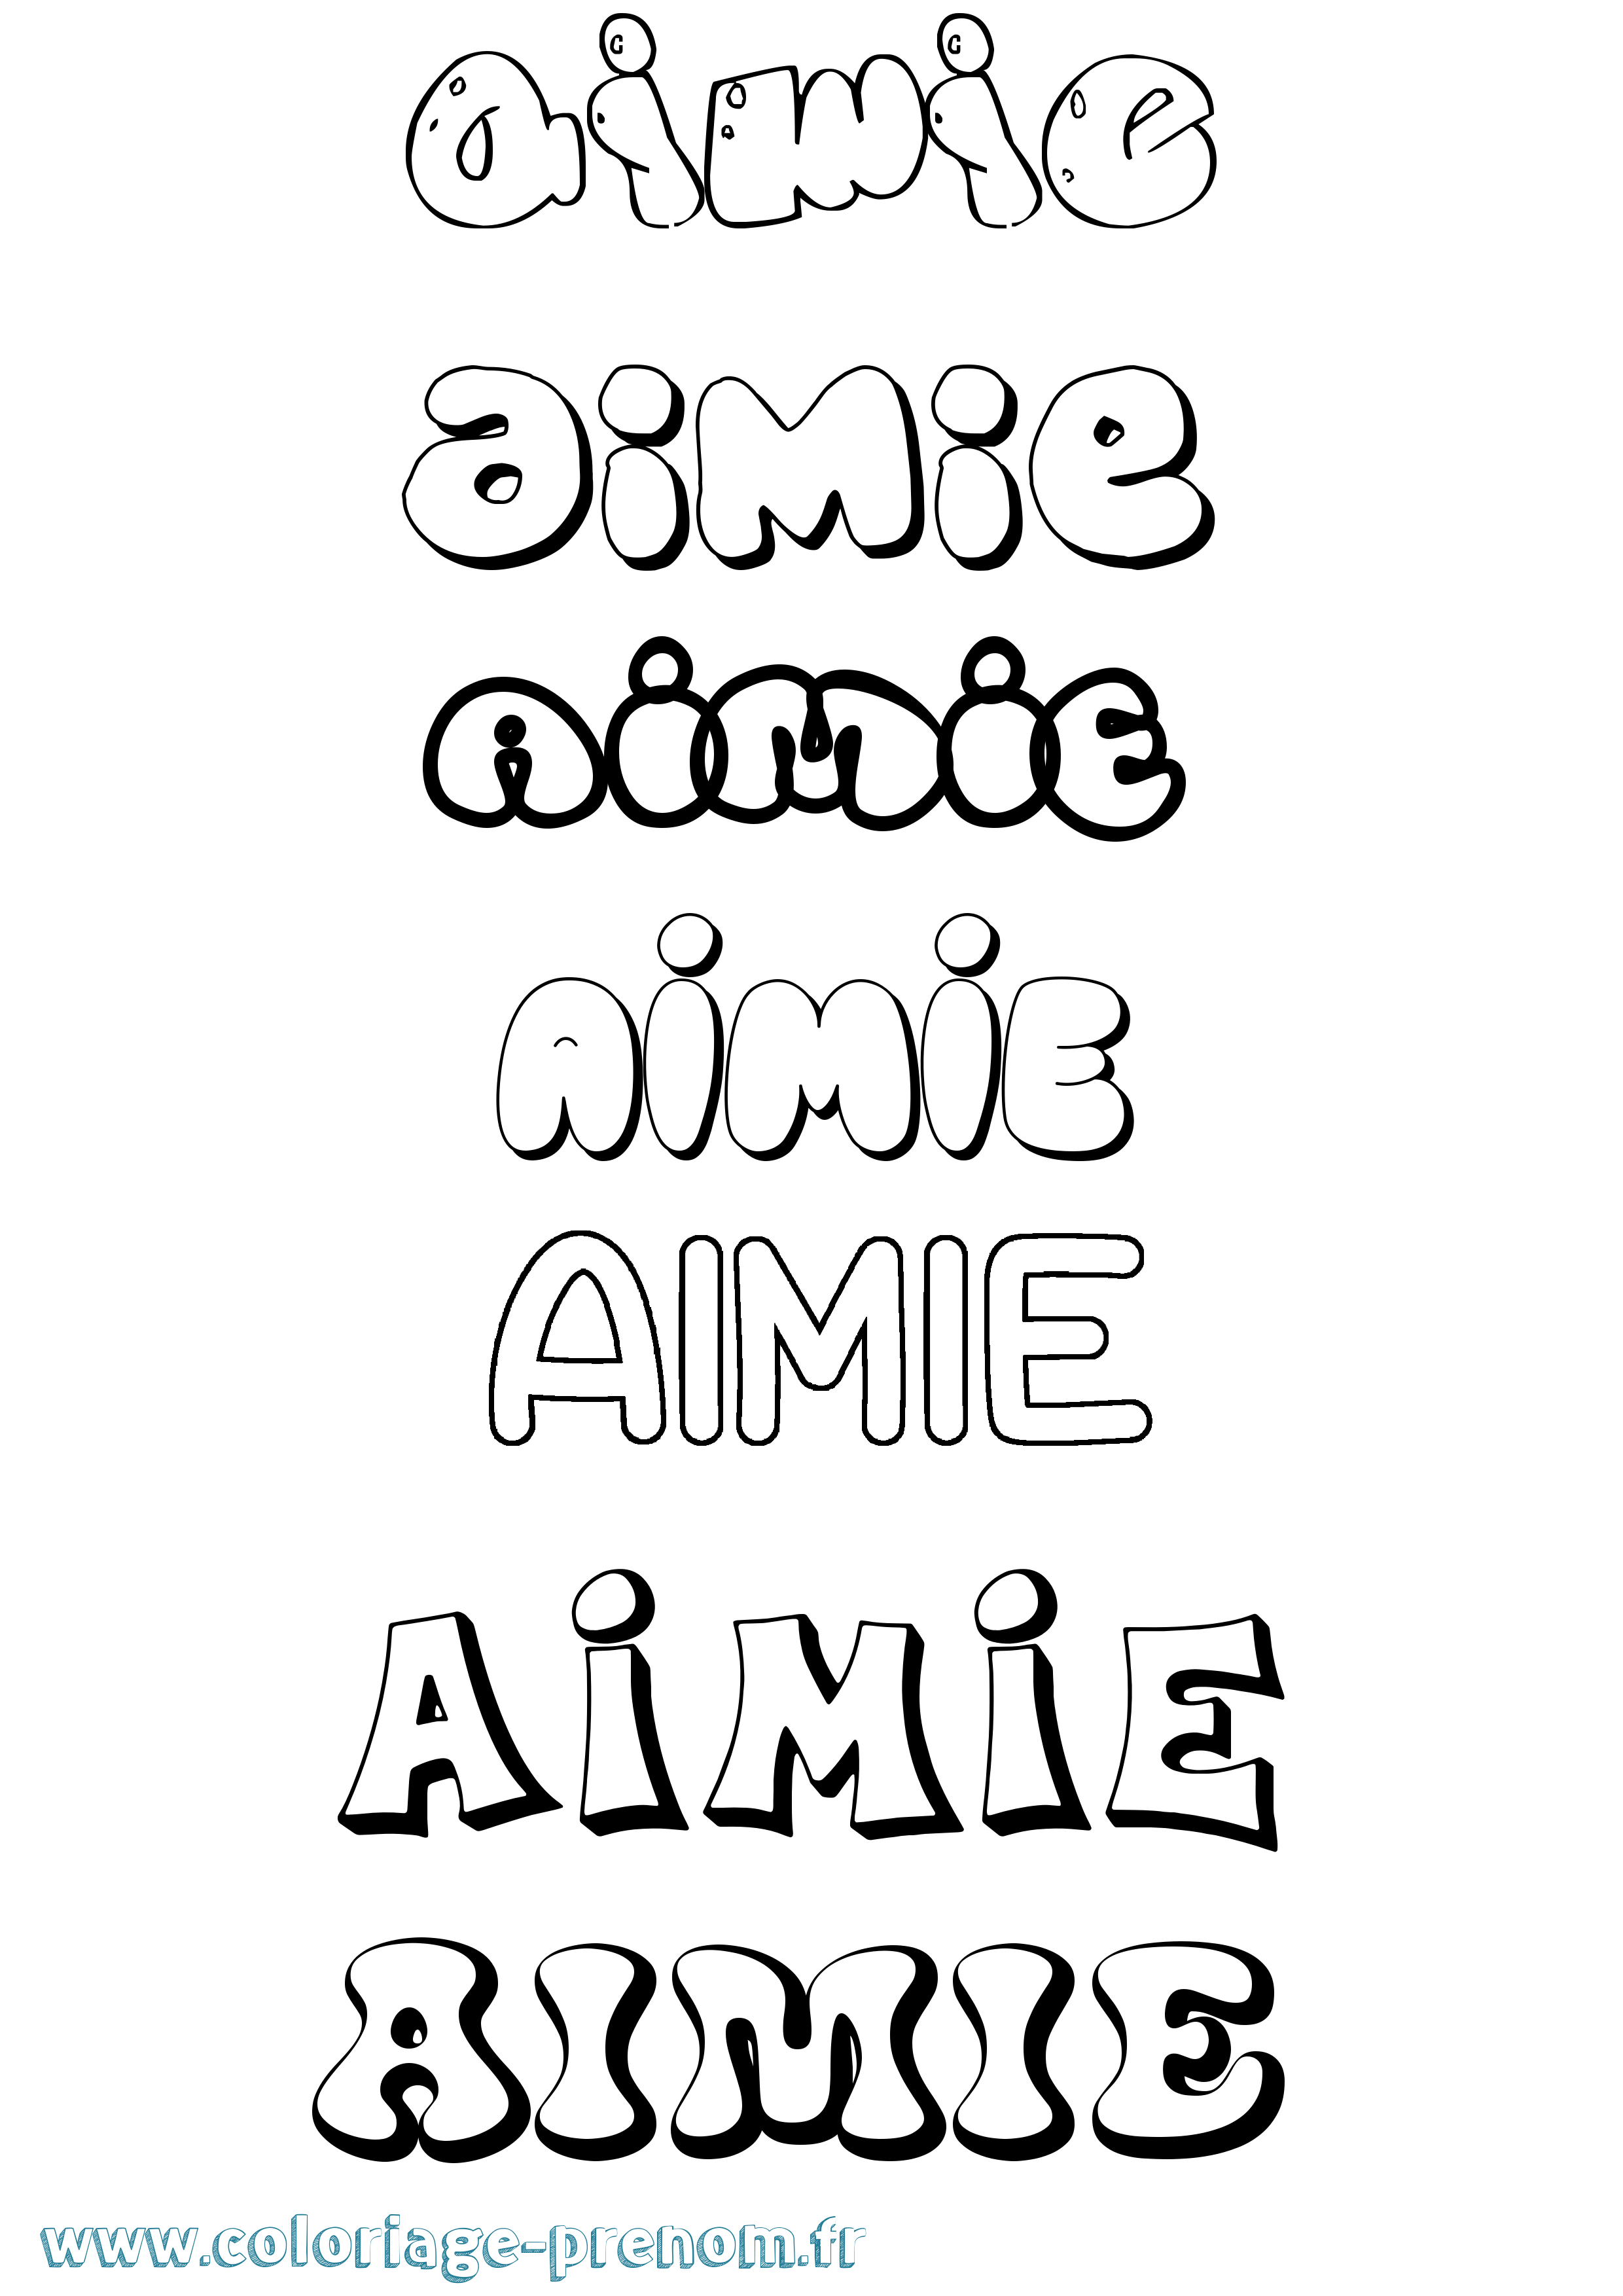 Coloriage prénom Aimie Bubble